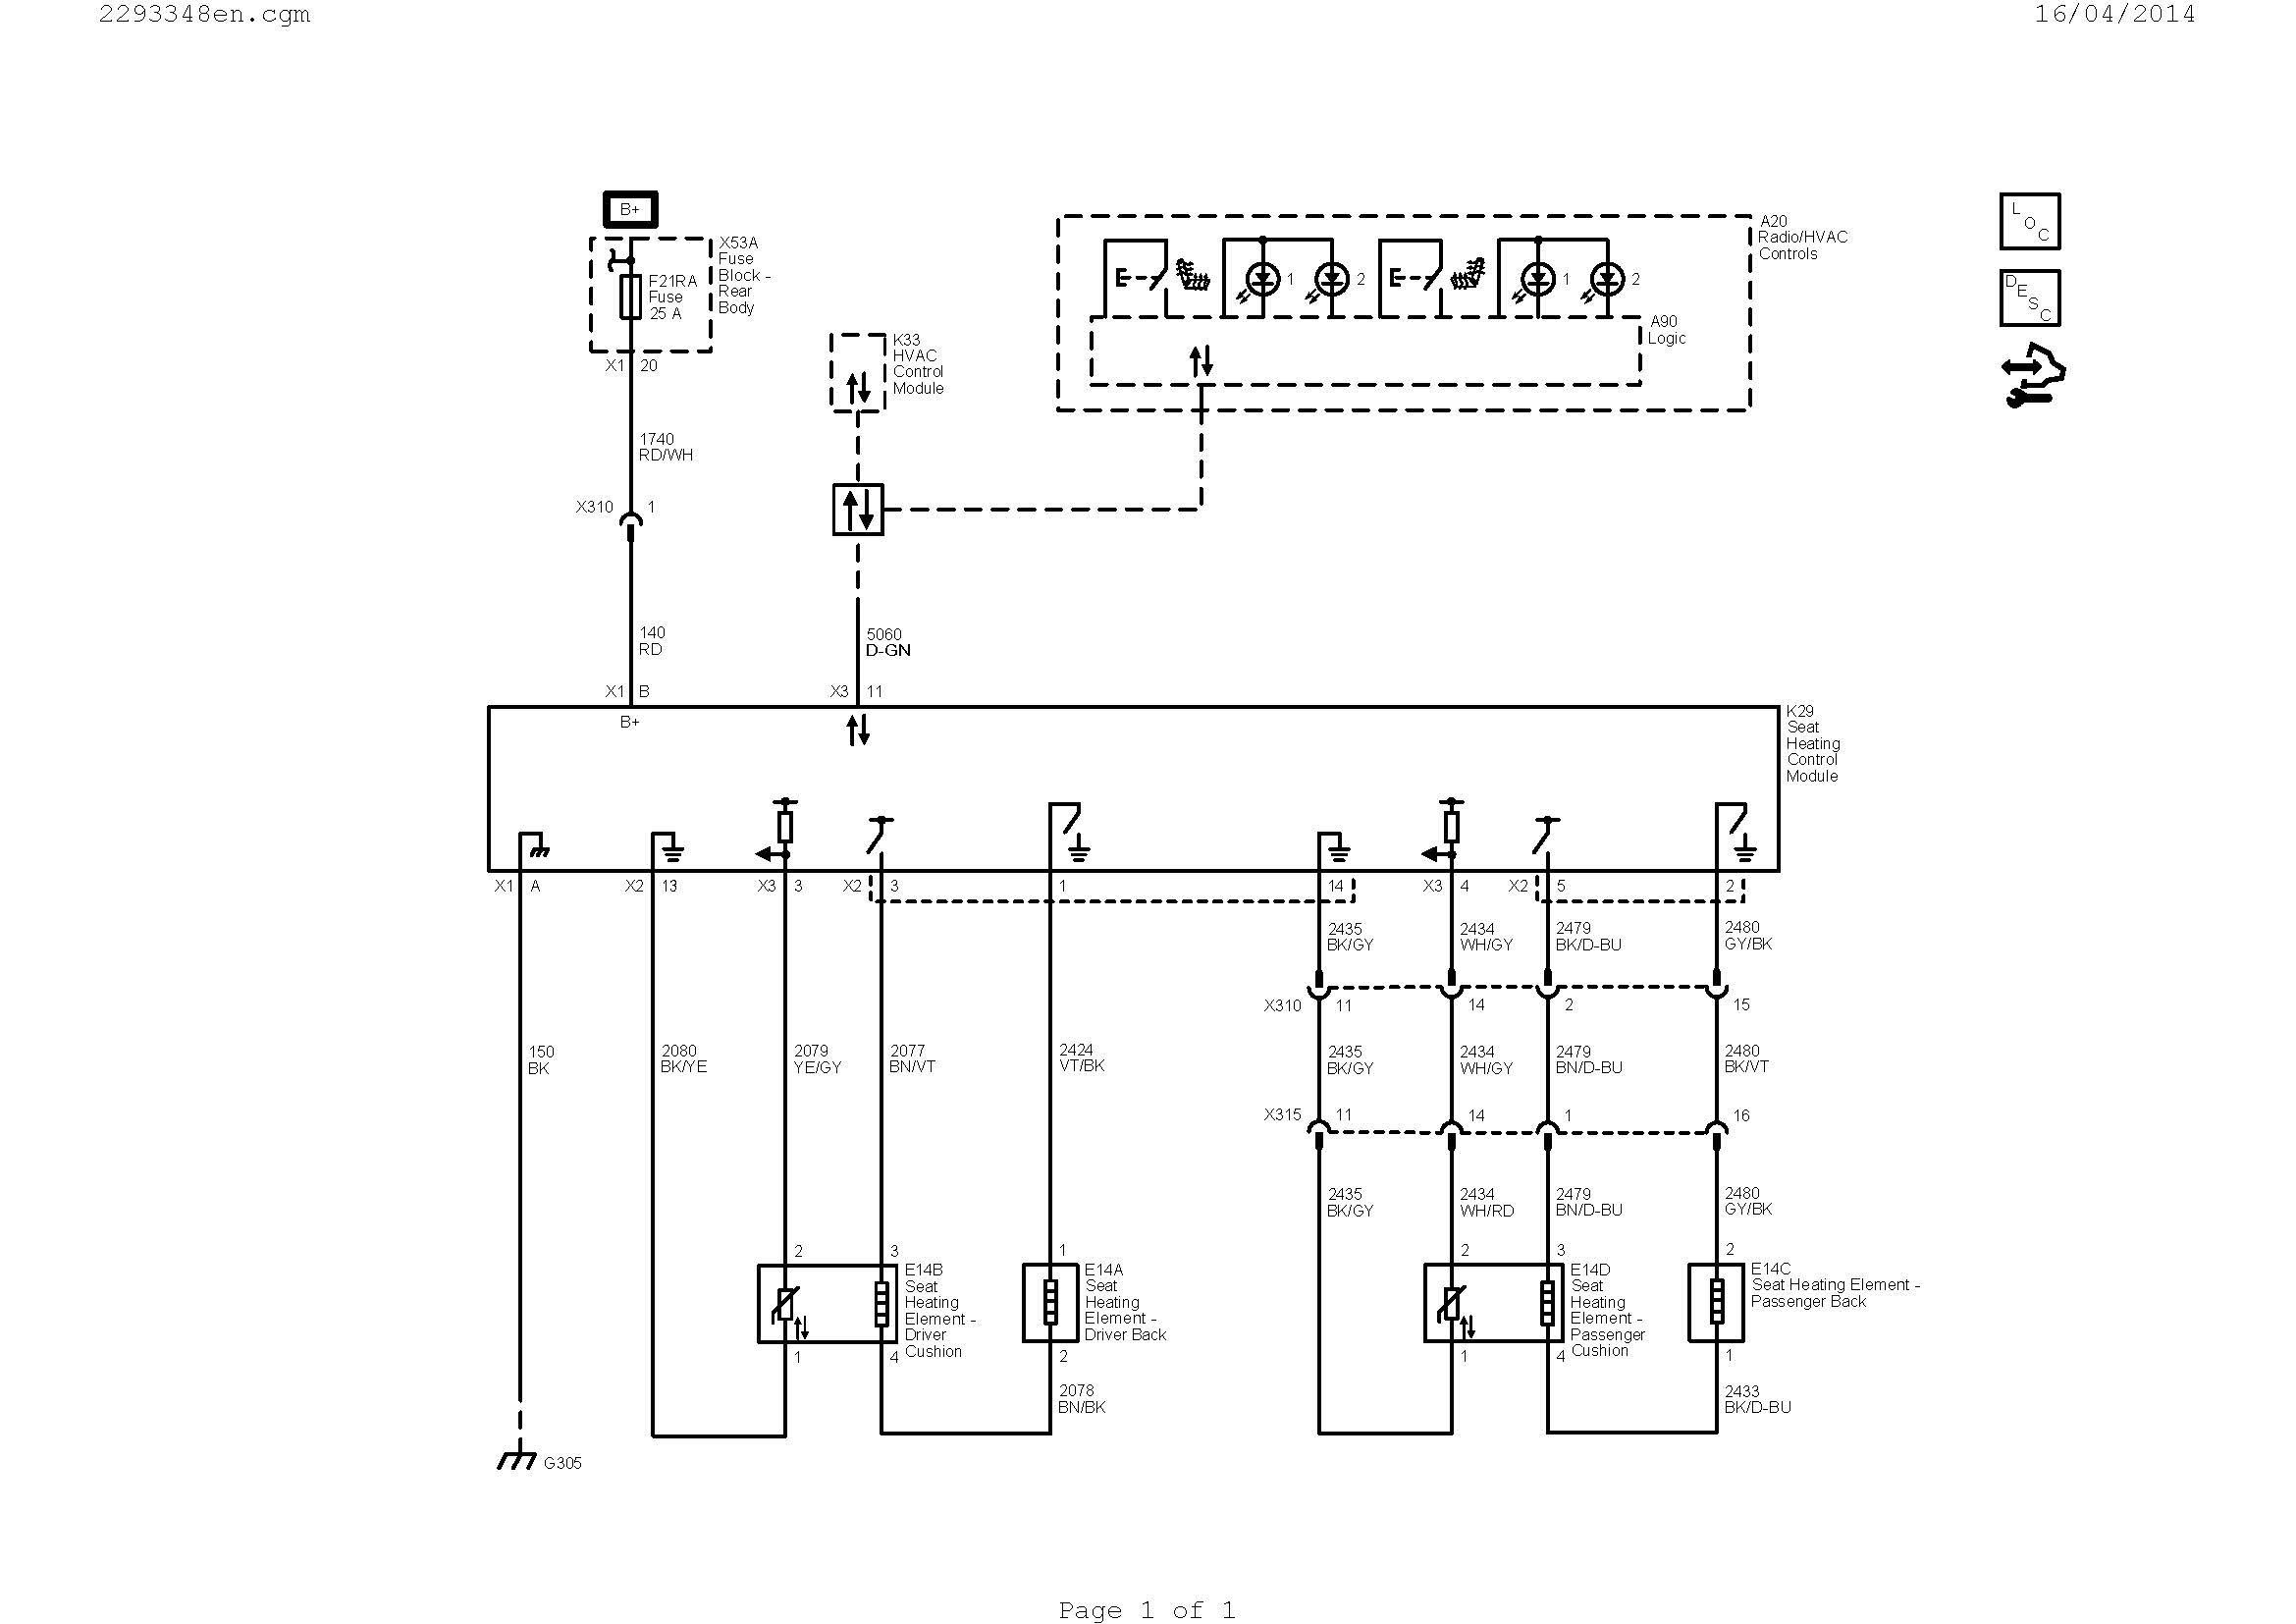 kenwood wiring diagram Collection Wiring Diagrams for Free Save Wiring Diagram Guitar Fresh Hvac Diagram DOWNLOAD Wiring Diagram